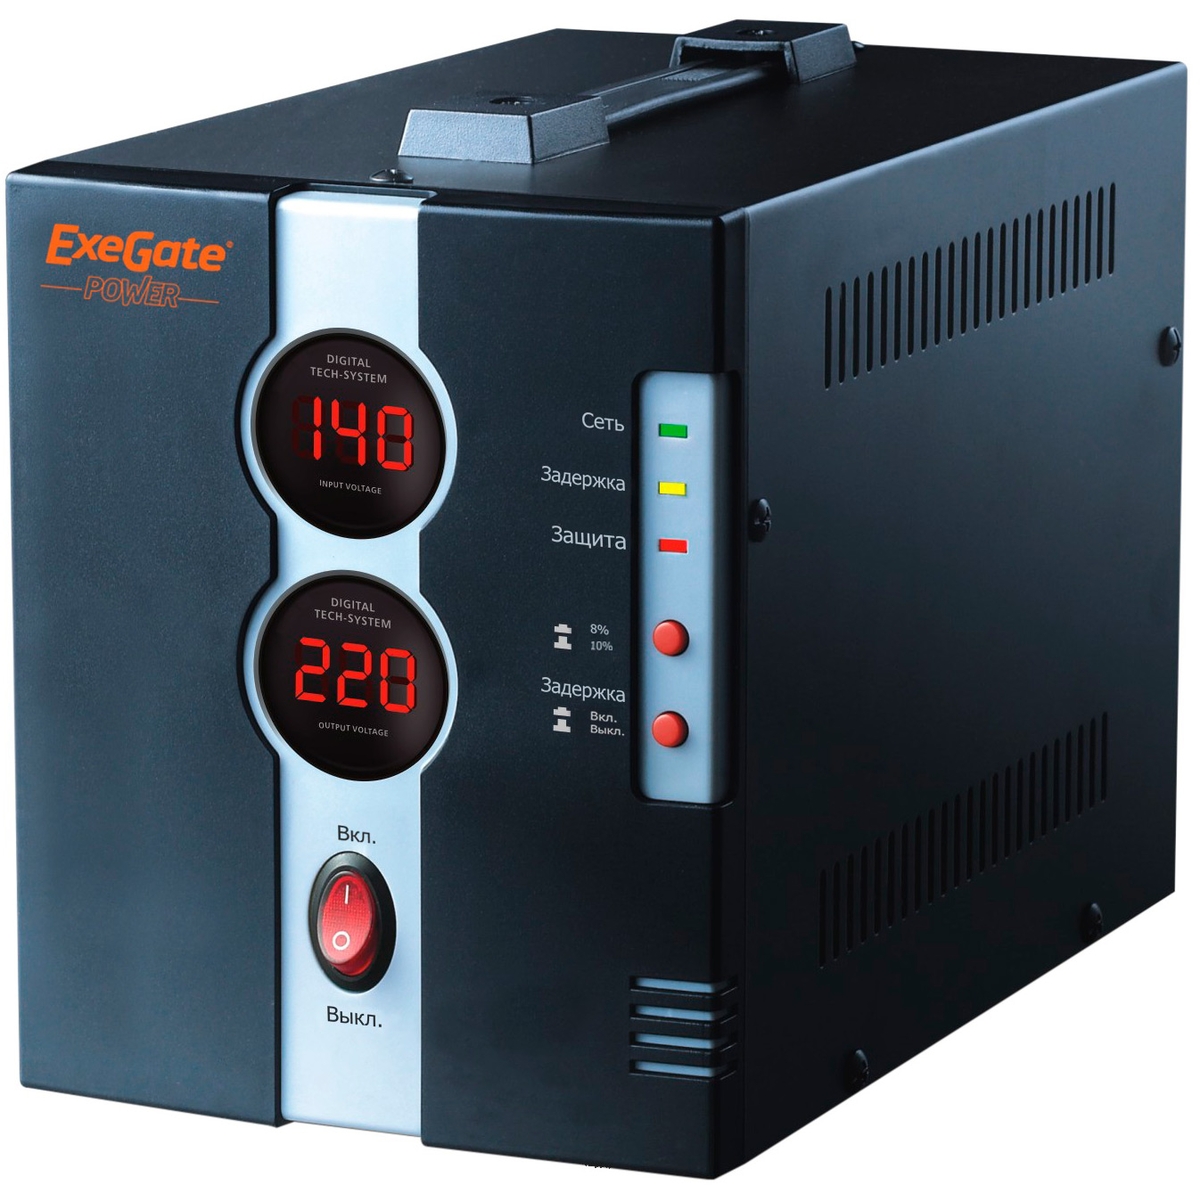 Стабилизатор ExeGate Power DCR-1500D